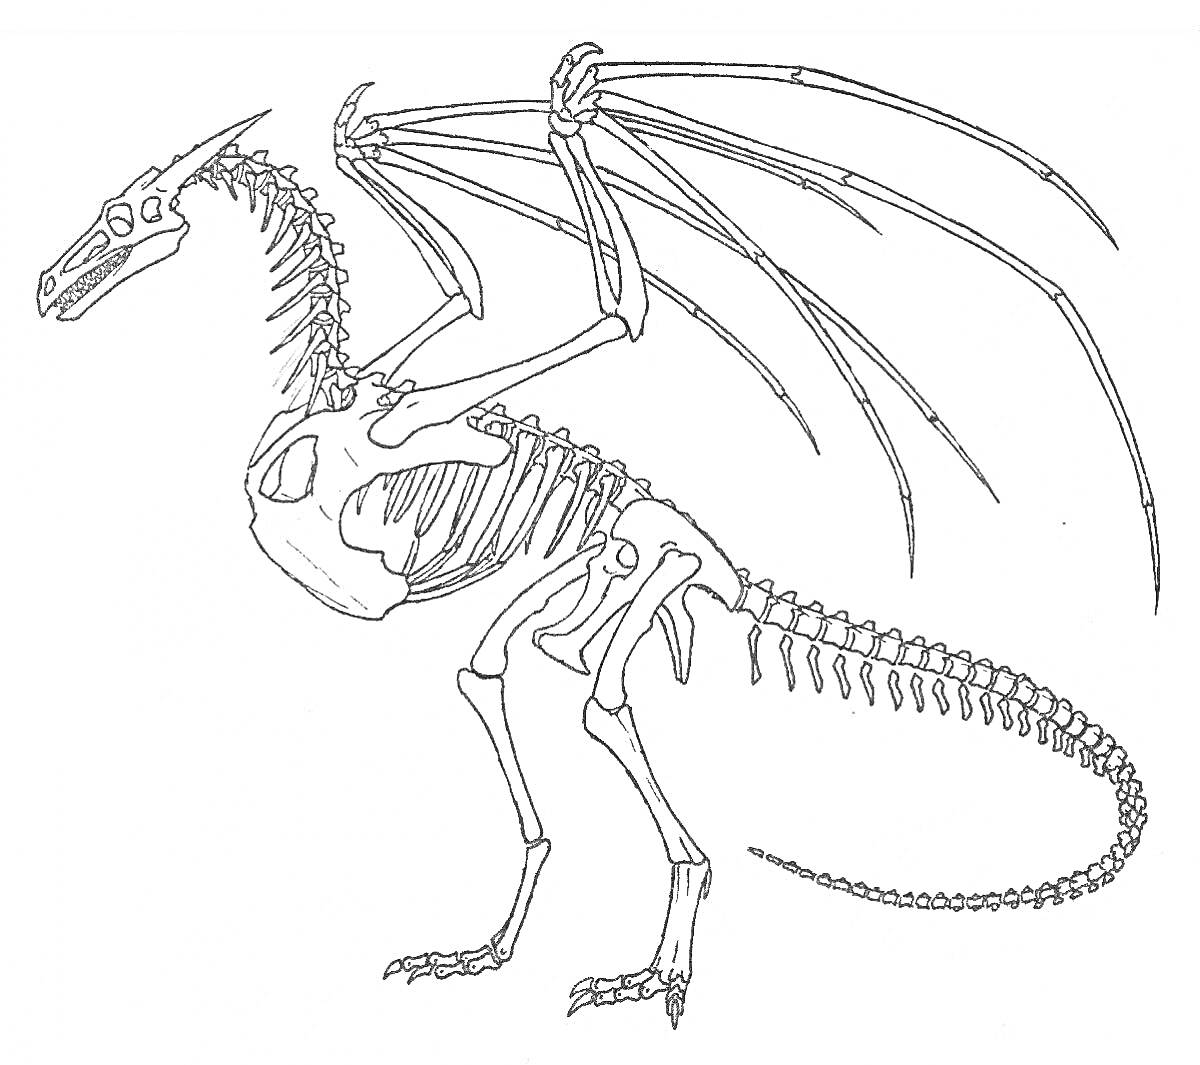 Кости летающего динозавра с длинным хвостом и большими крыльями